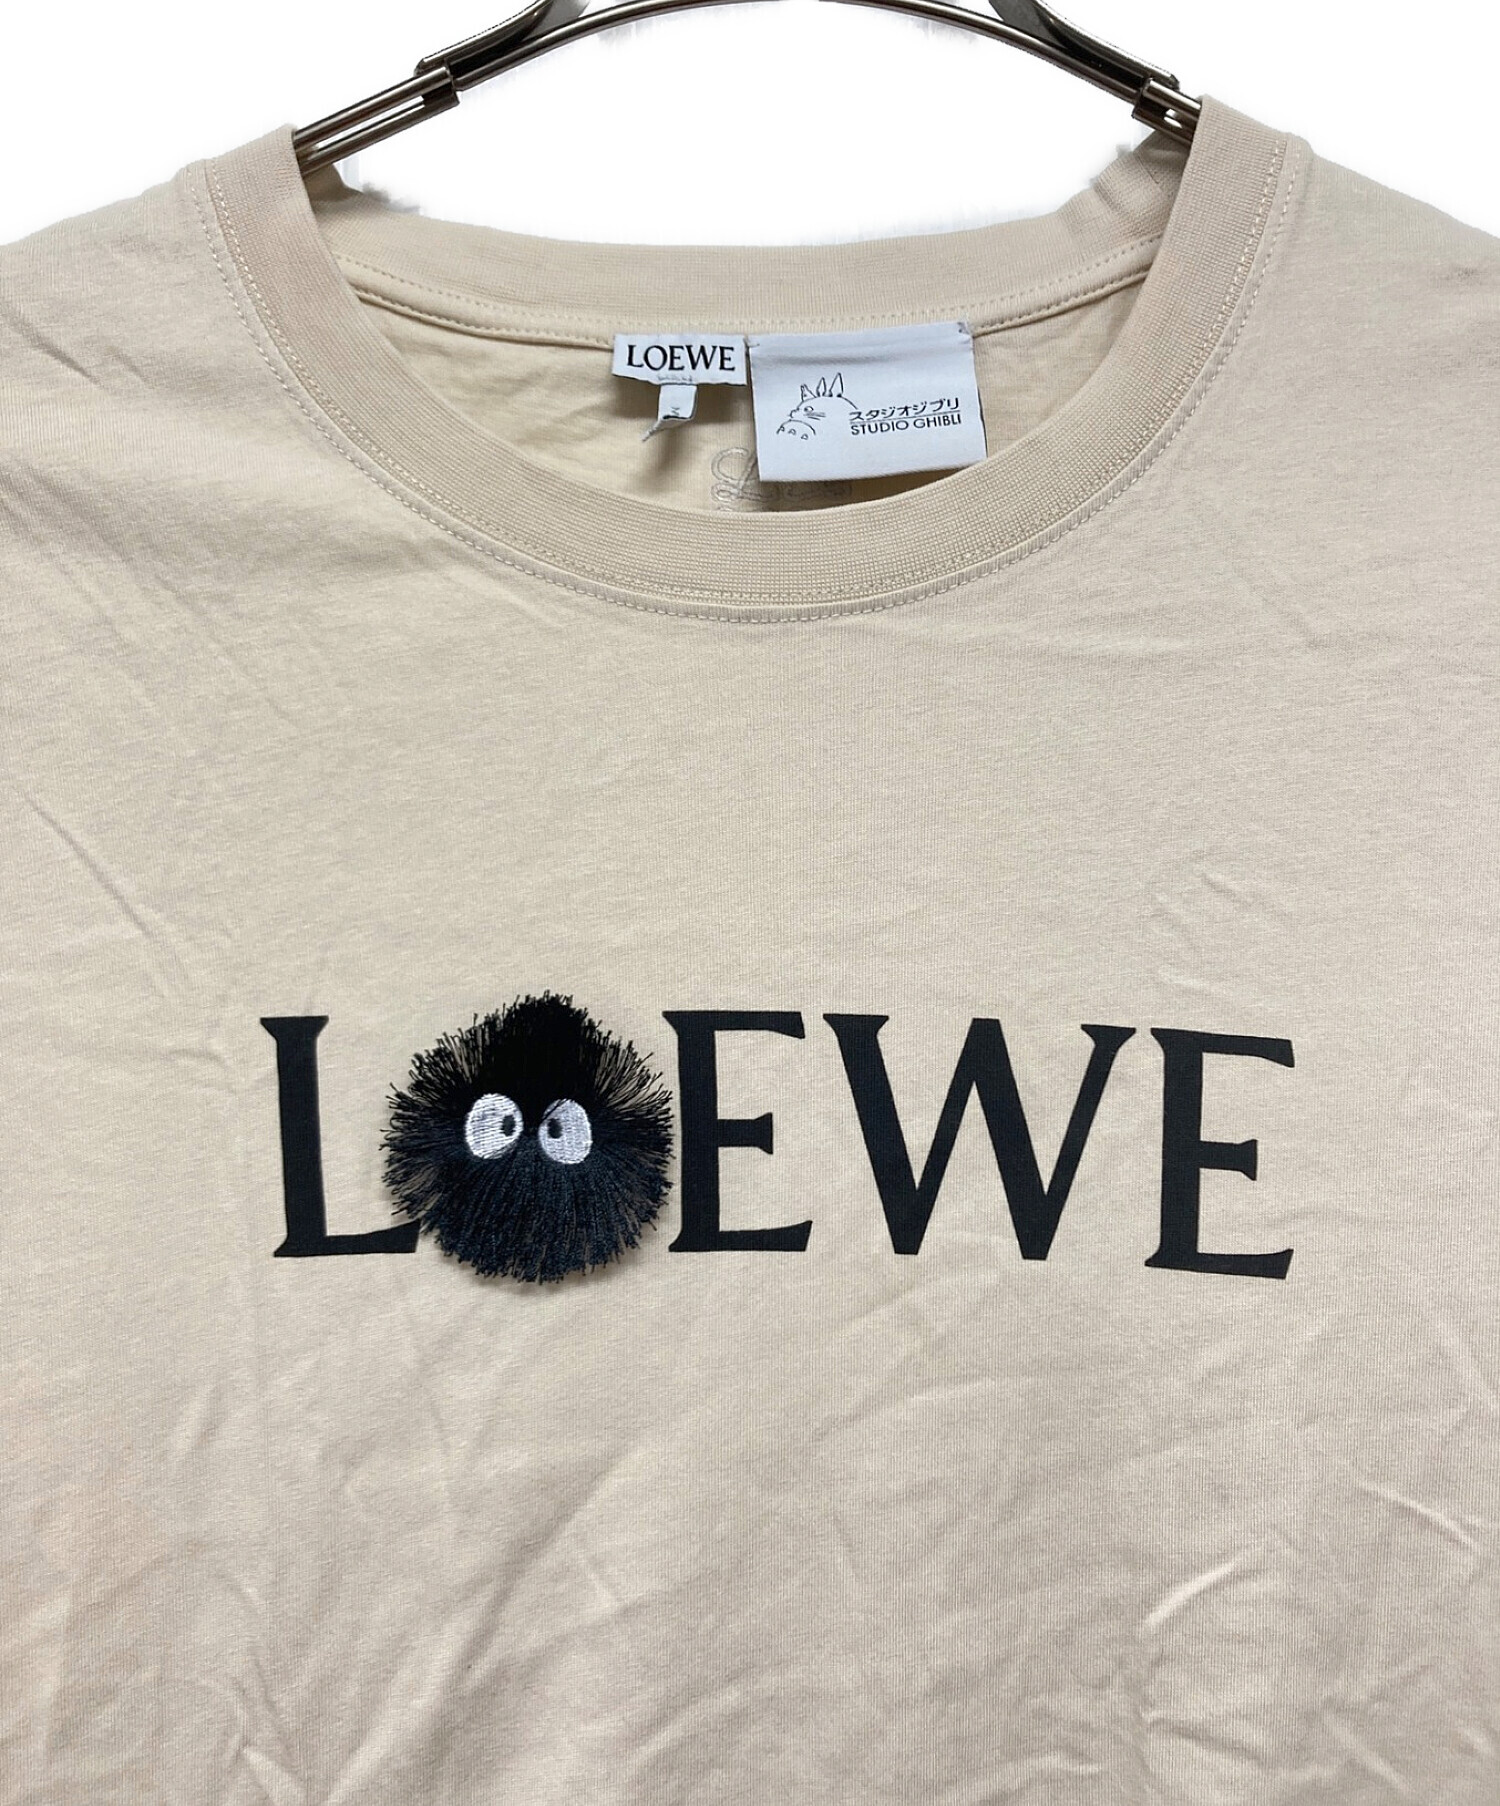 色…黒《LOEWE》 ロエベ×スタジオジブリ「千と千尋 」まっくろくろすけTシャツ